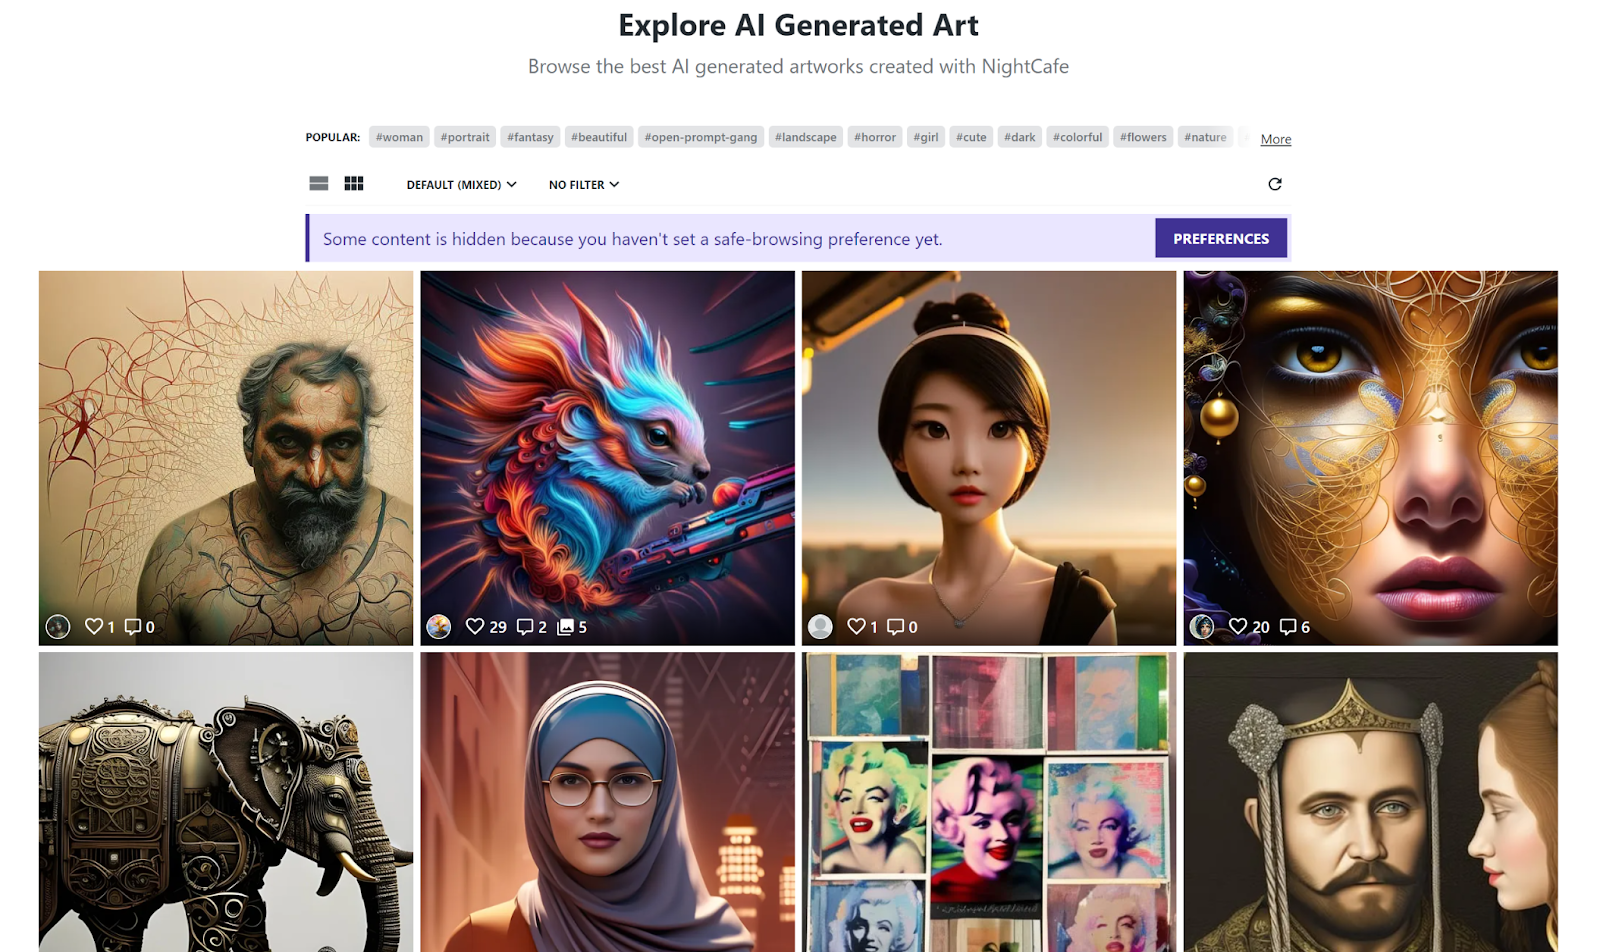 NightCafe AI art community page.